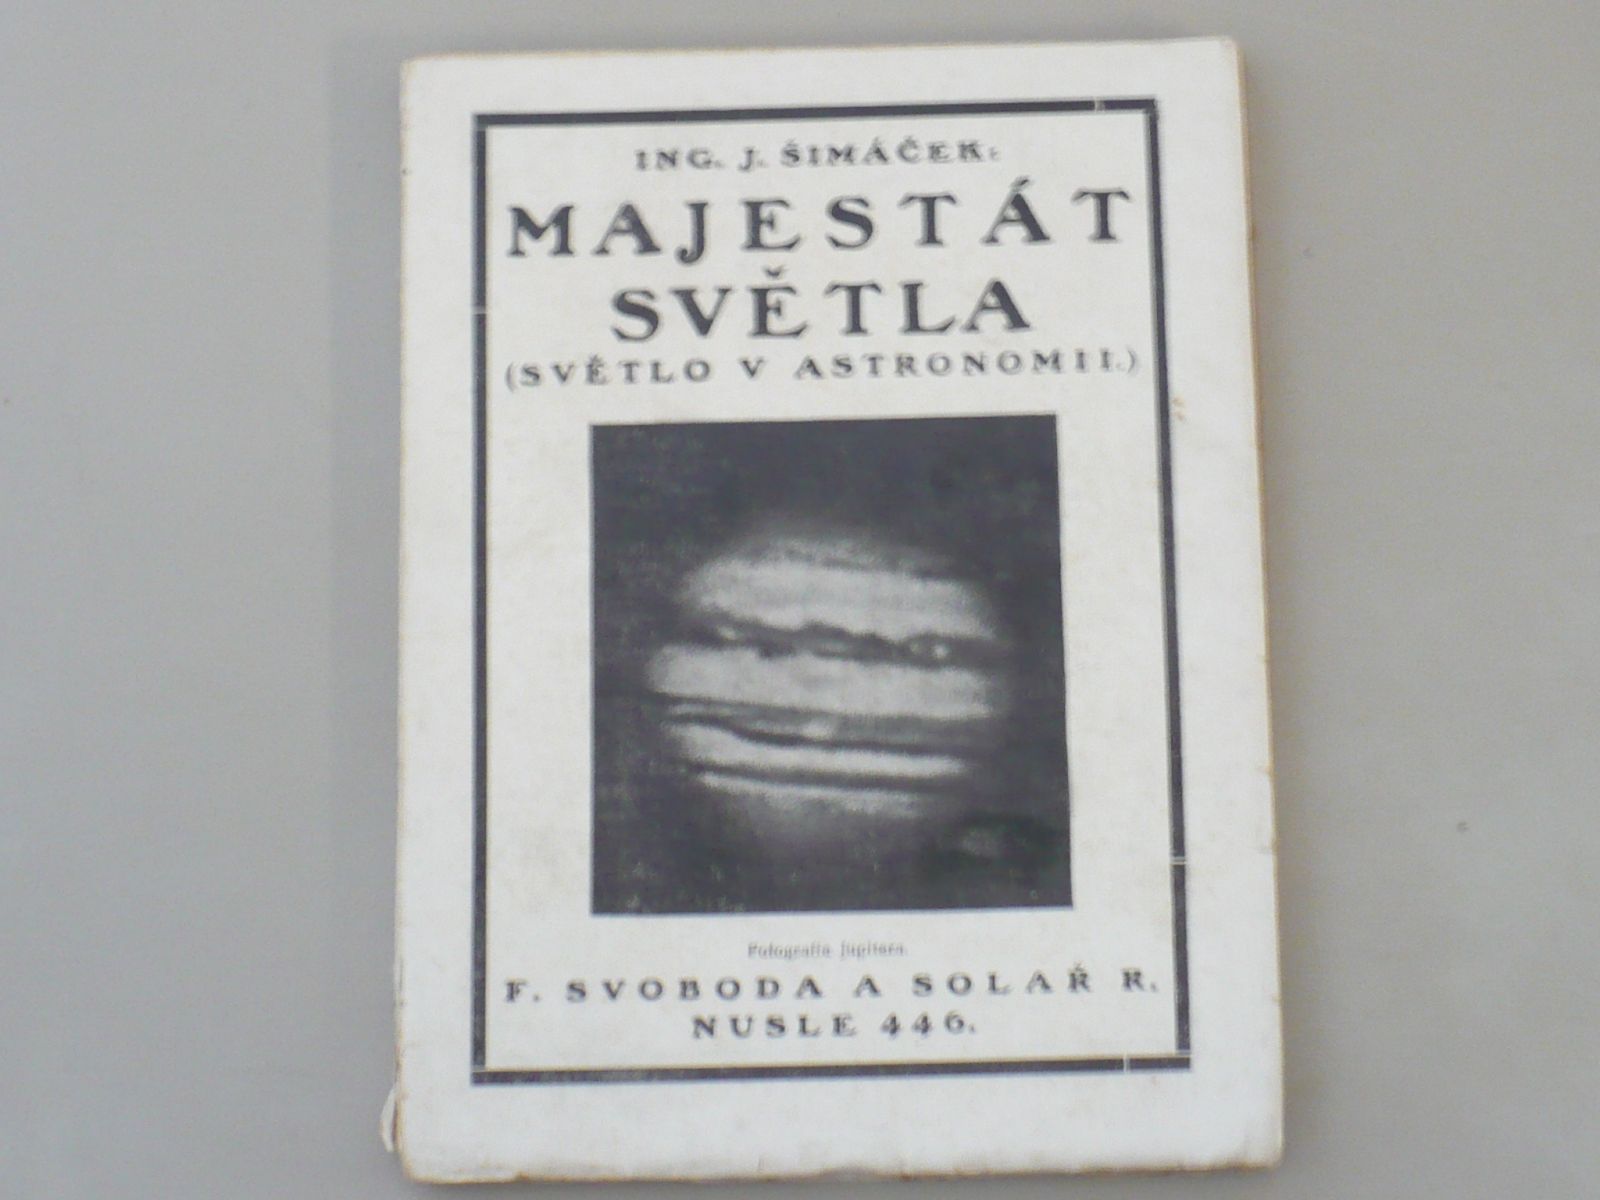 Ing. J. Šimáček - Majestát světla - Světlo v astronomii (1927)